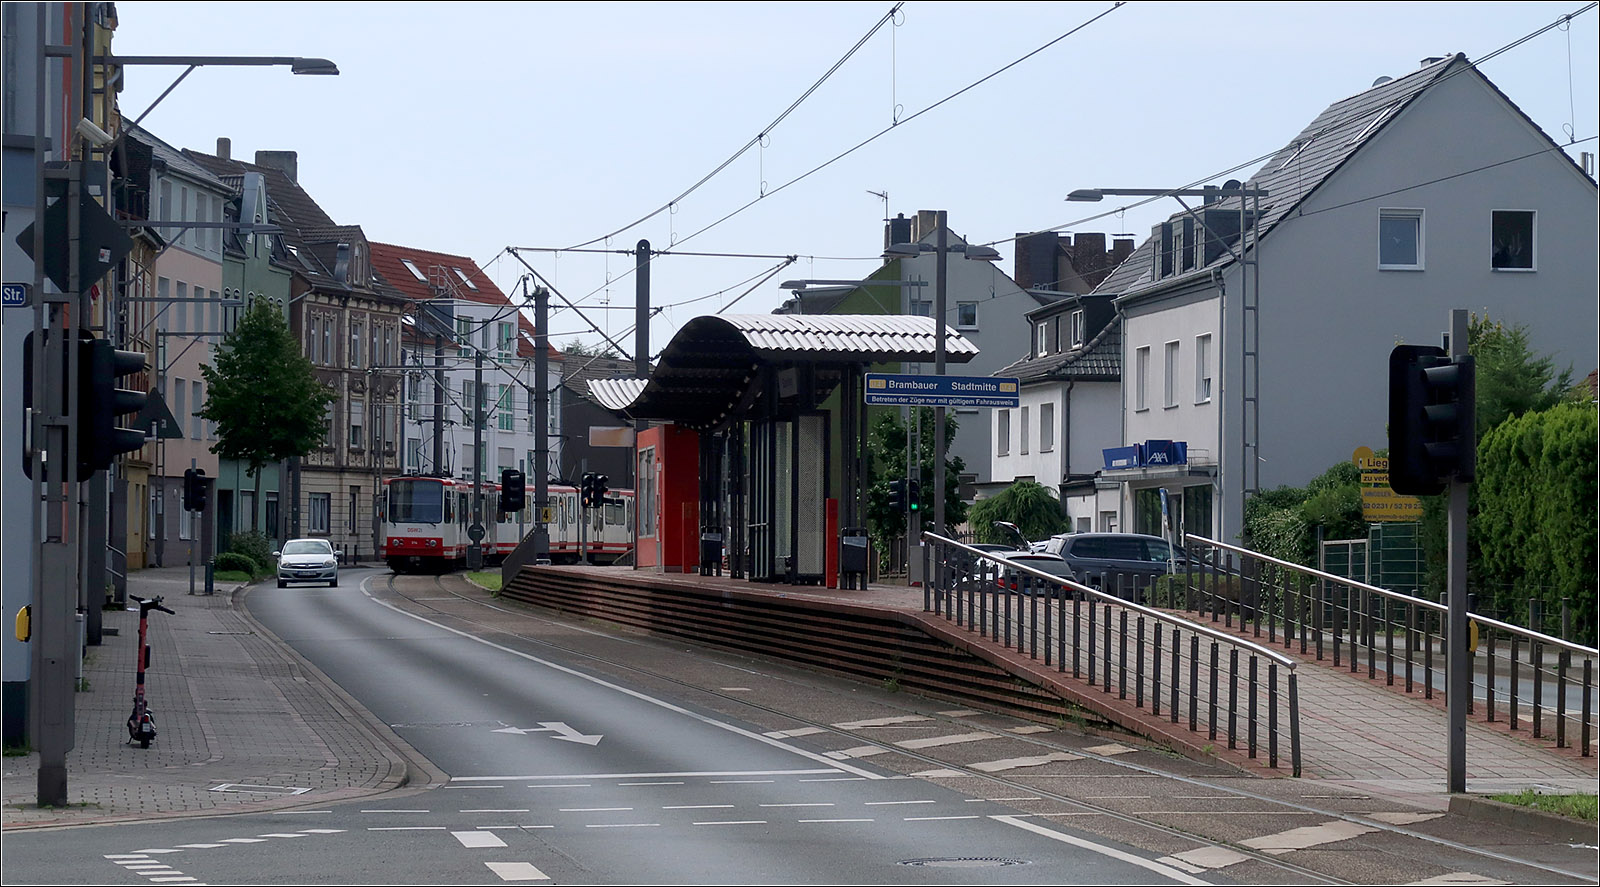 Entlang der Stadtbahnlinie U41 in Dortmund - 

Die Hochbahnsteige der 1999 auf Stadtbahn-Vorlaufbetrieb umgestellten Strecke sind recht ansprechend gestaltet. Da die Stadtbahnwagen B eine etwas geringere Fußbodenhöhe haben, als die Stuttgarter DT8-Fahrzeuge, lassen sich die hohen Bahnsteige auch besser in den Straßenraum einfügen. Hier die Haltestelle Externberg in Dortmund-Eving an der U41 nach Brambauer.

21.08.2022 (M)